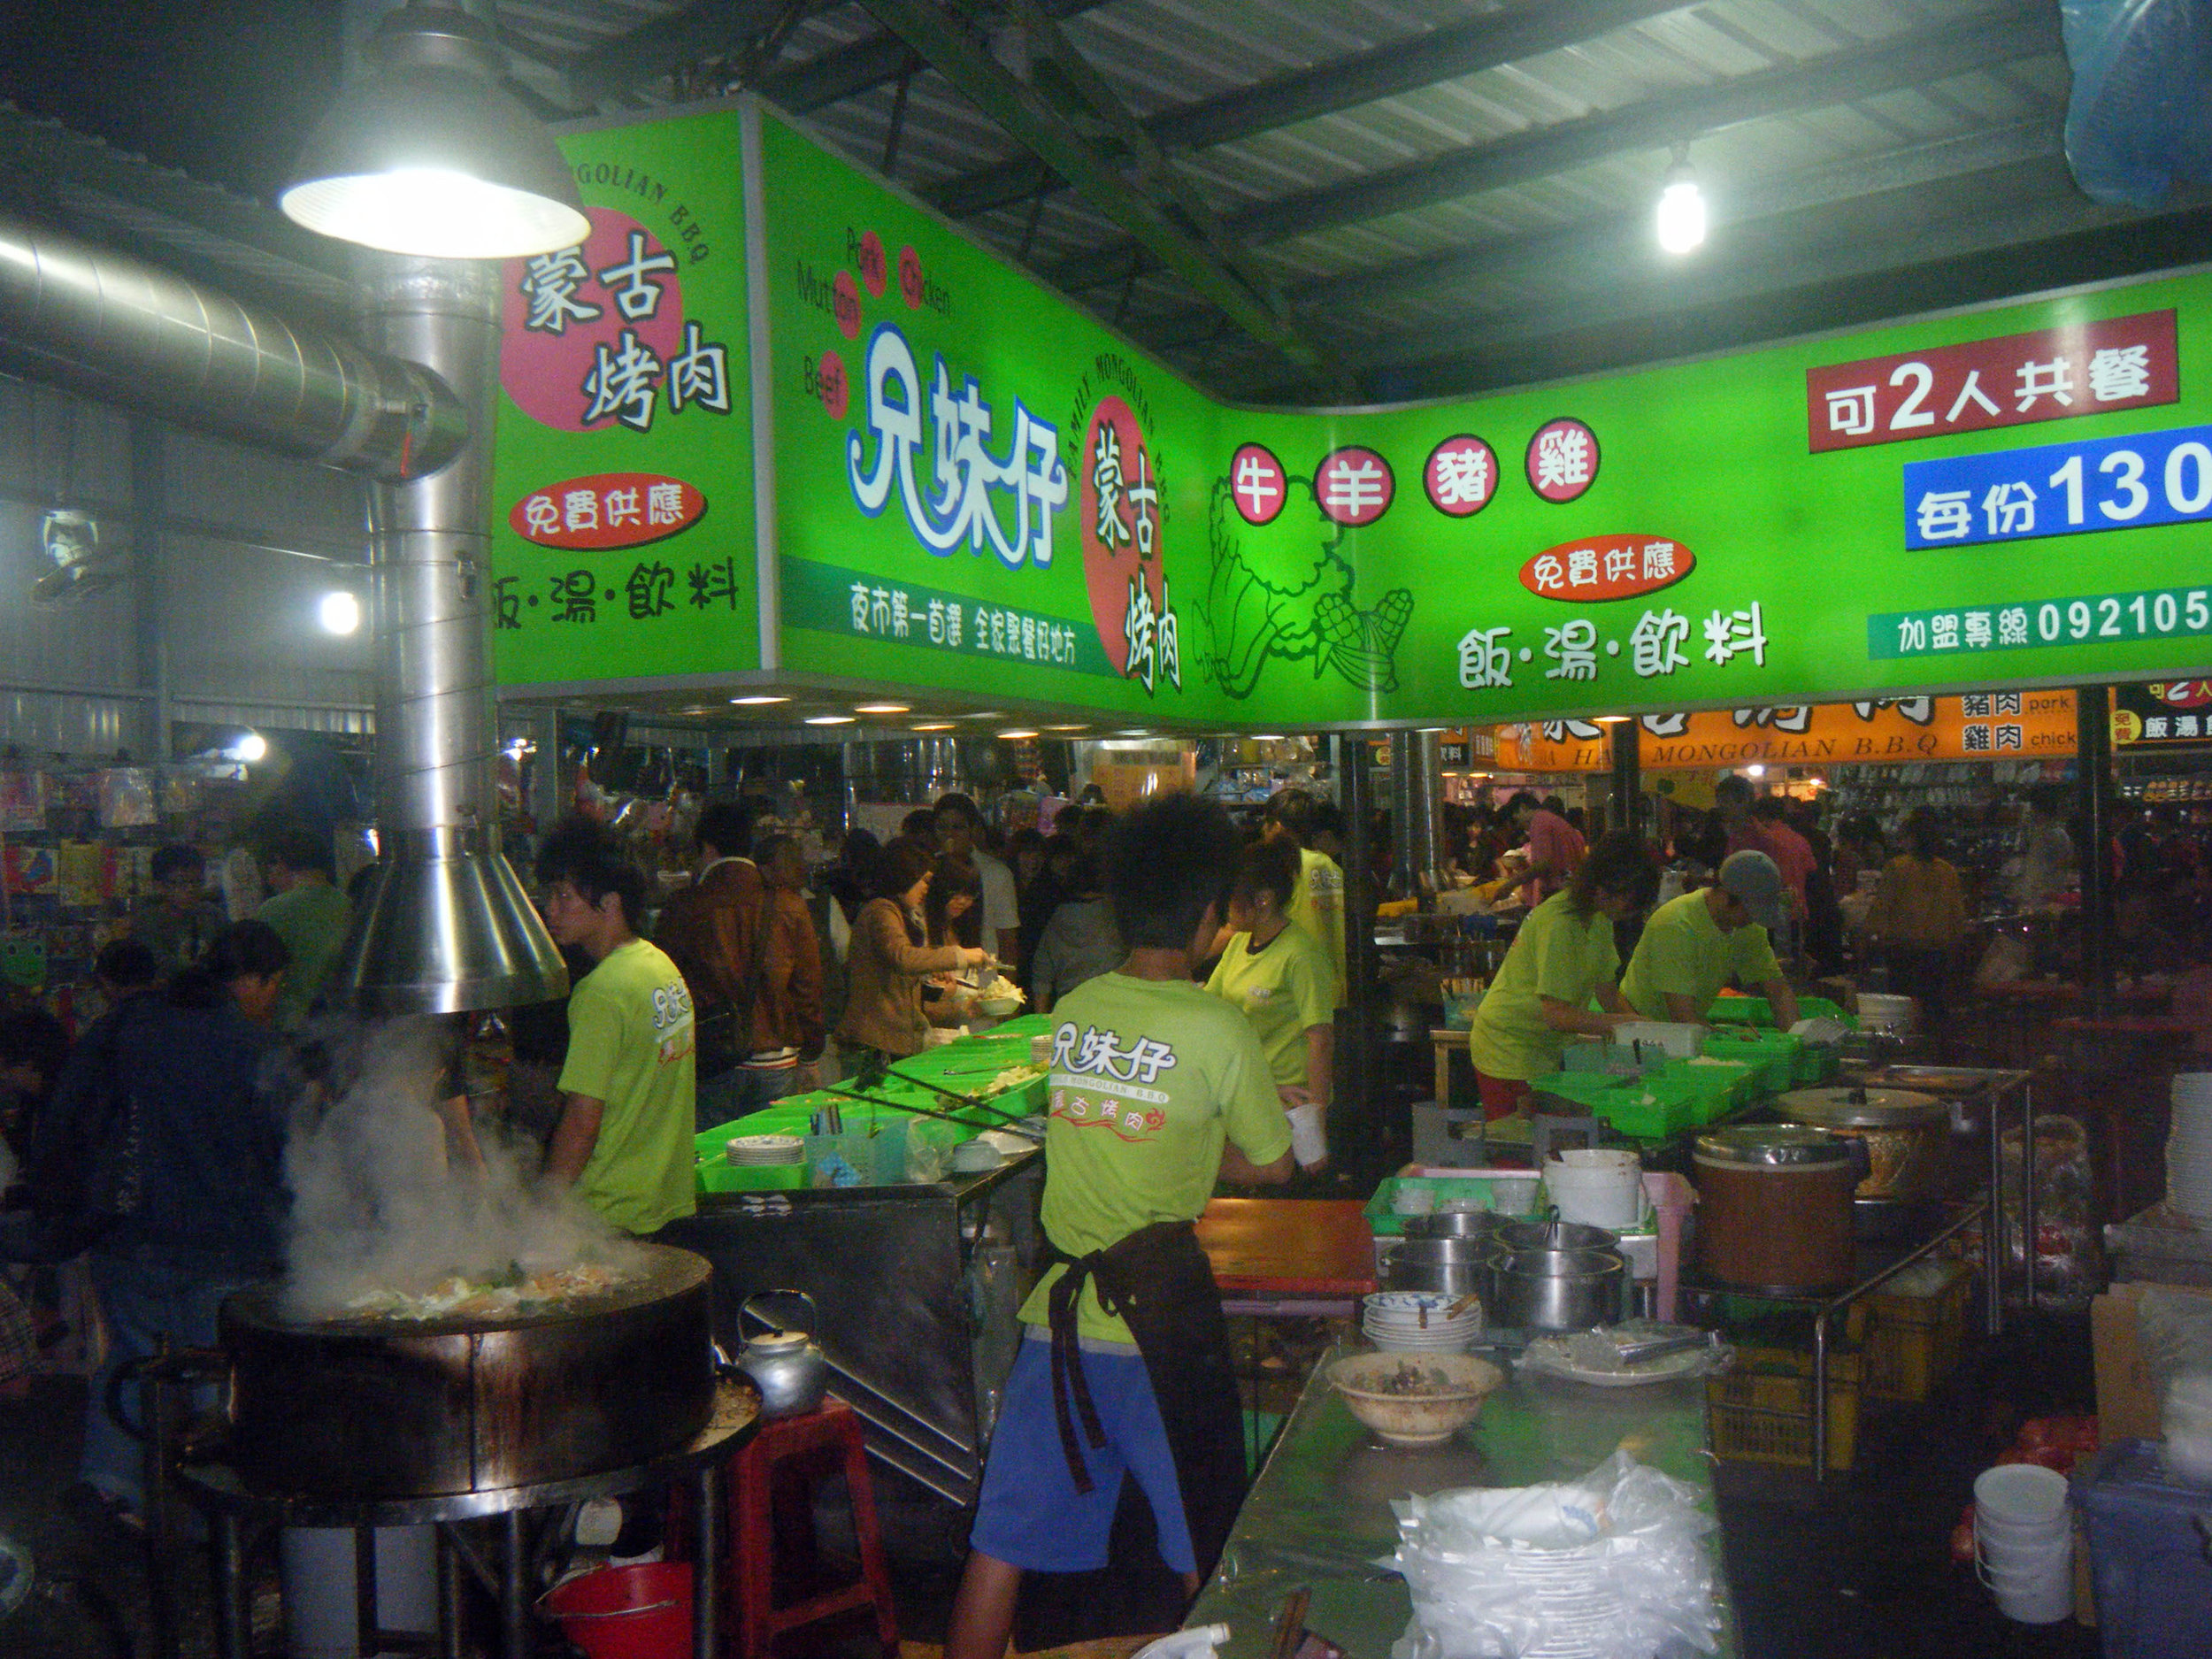 Chiayi night market 12-4-10.jpg